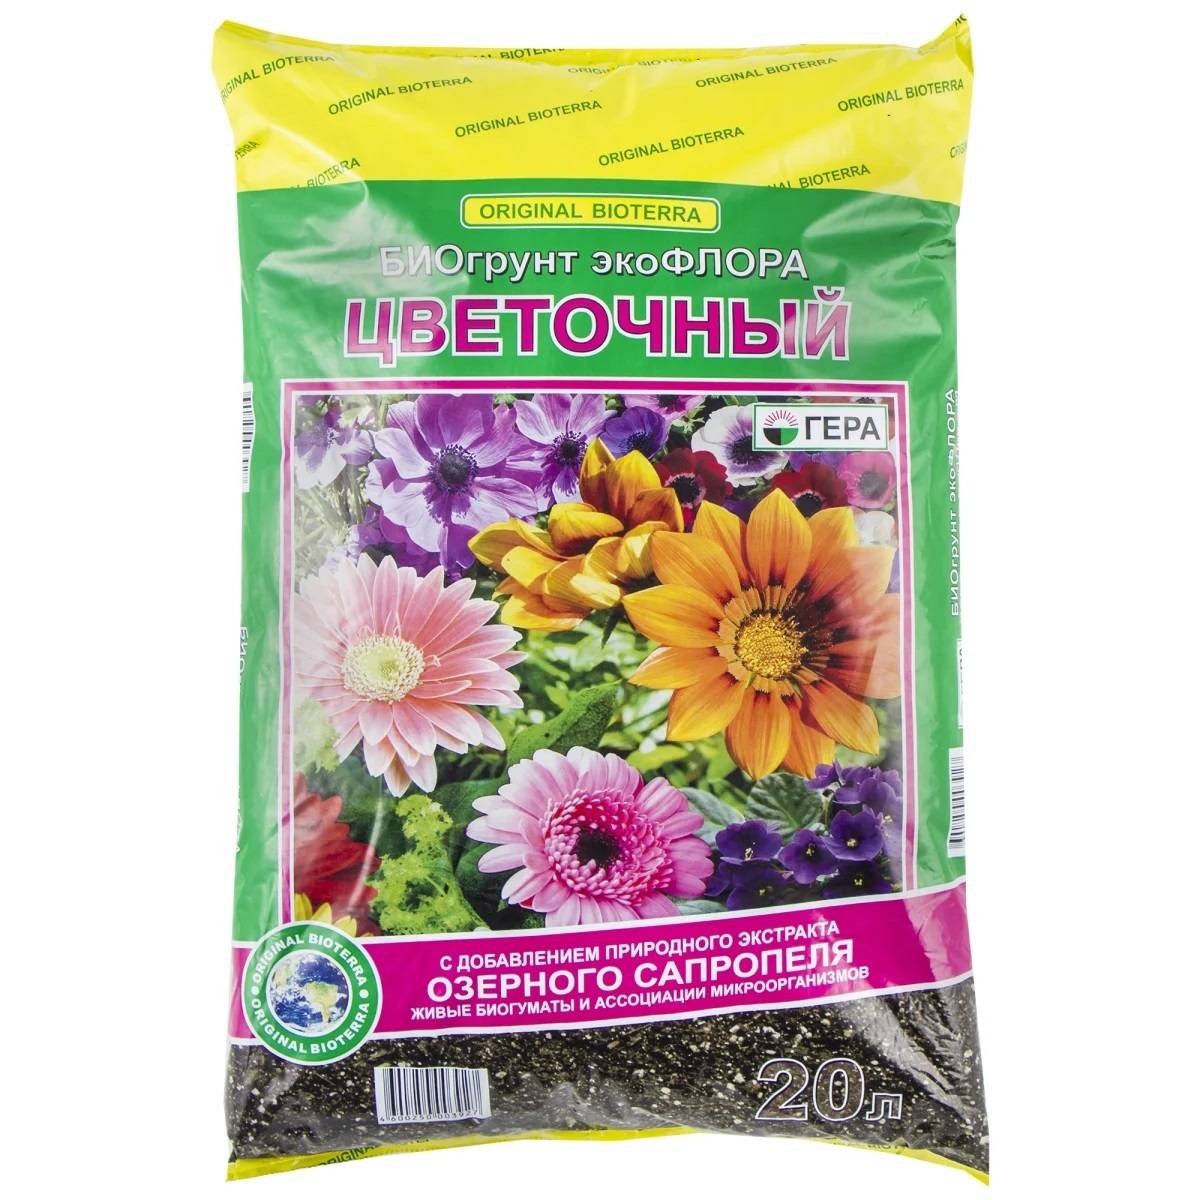 Грунт для комнатных цветов. какую почву использовать для растений?